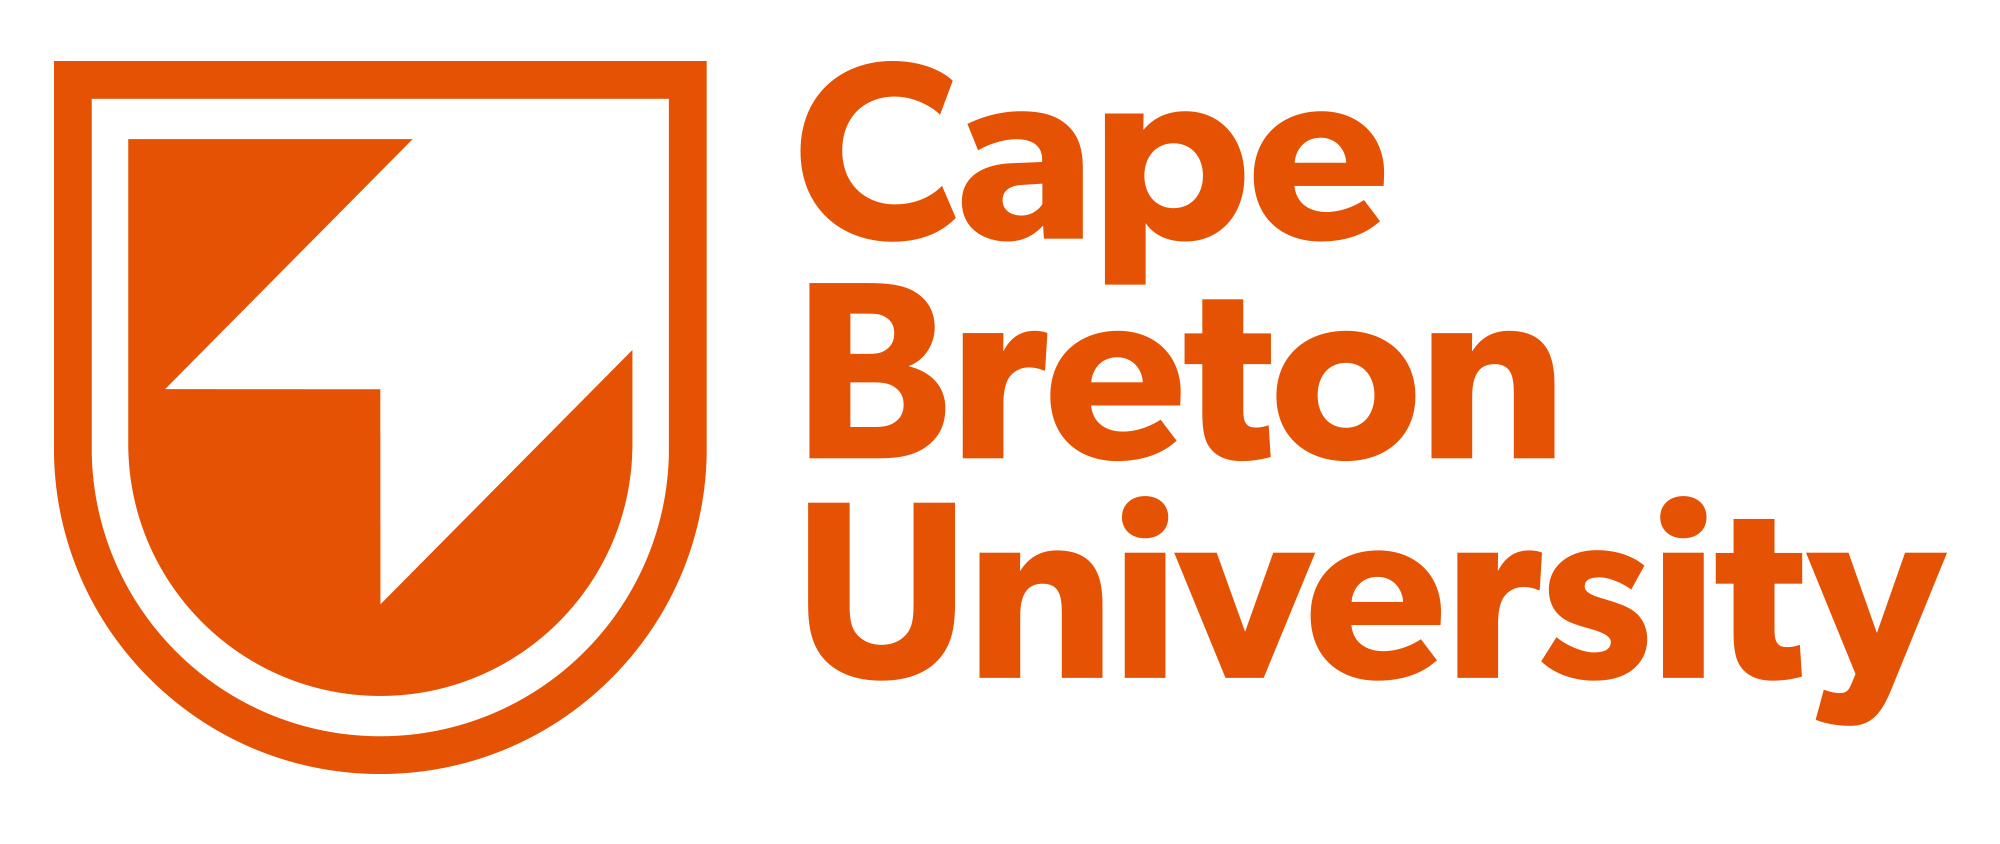 بورس تحصیلی دانشگاه کیپ برتون کانادا برای سال 2022-2021